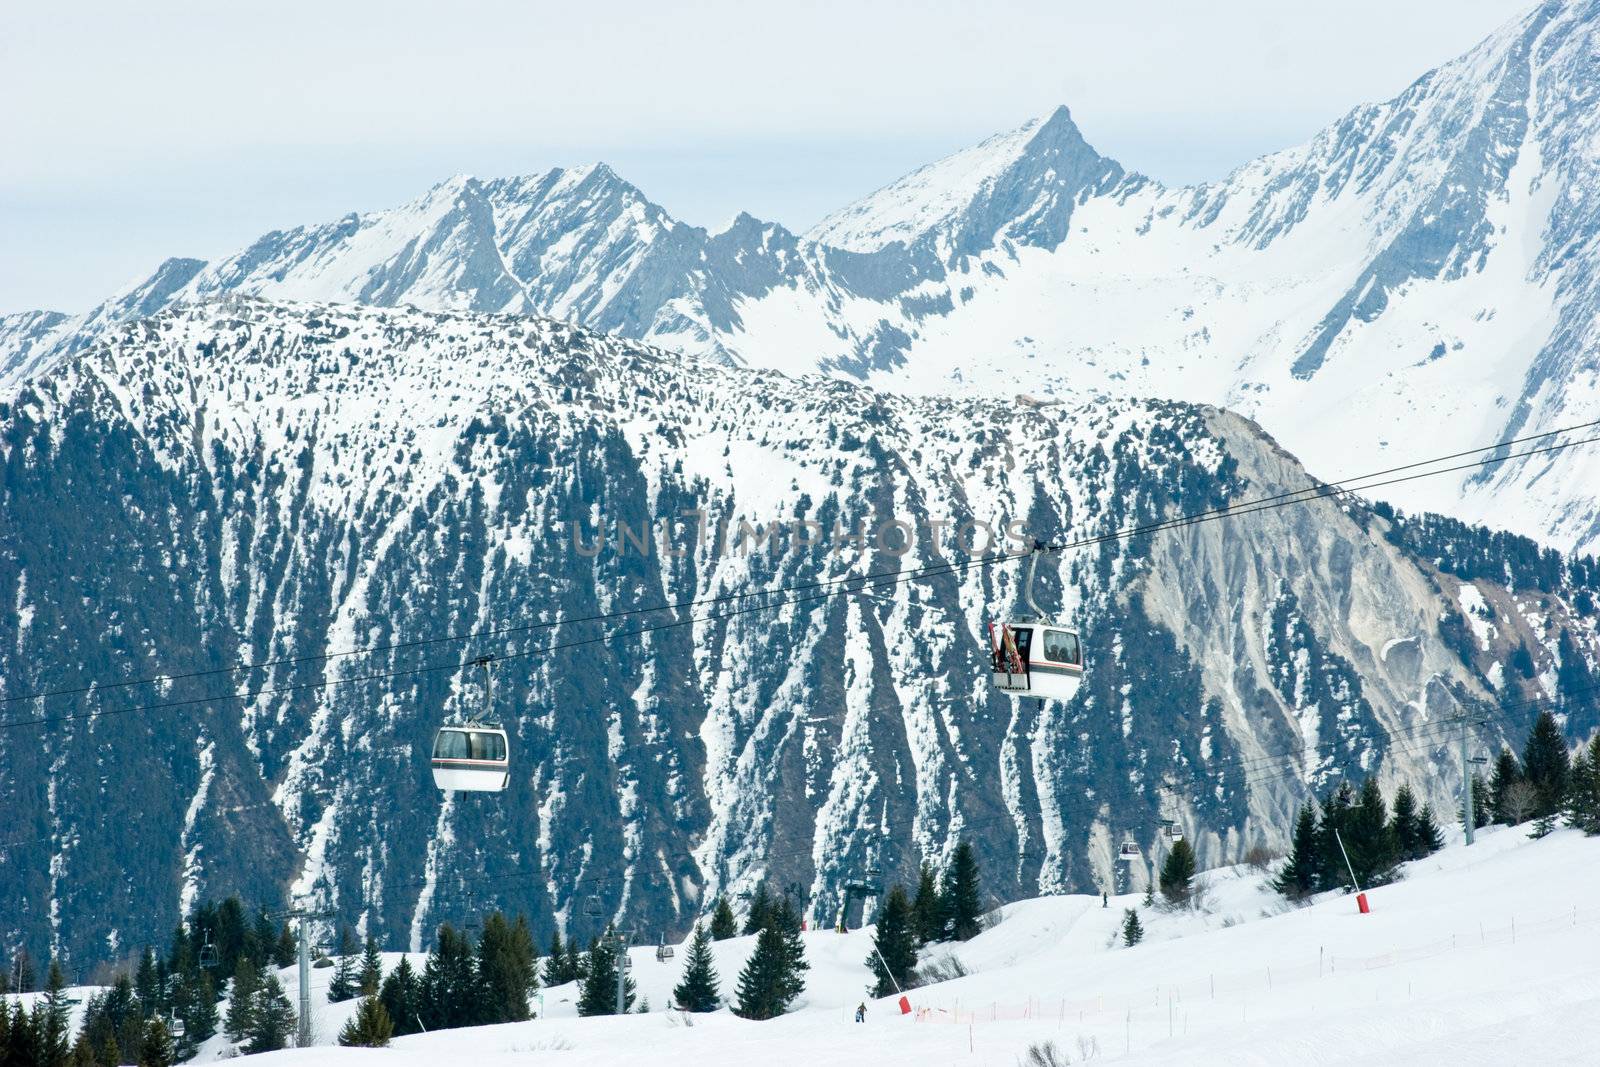 Gondola lift at Courchevel ski resort, French Alps